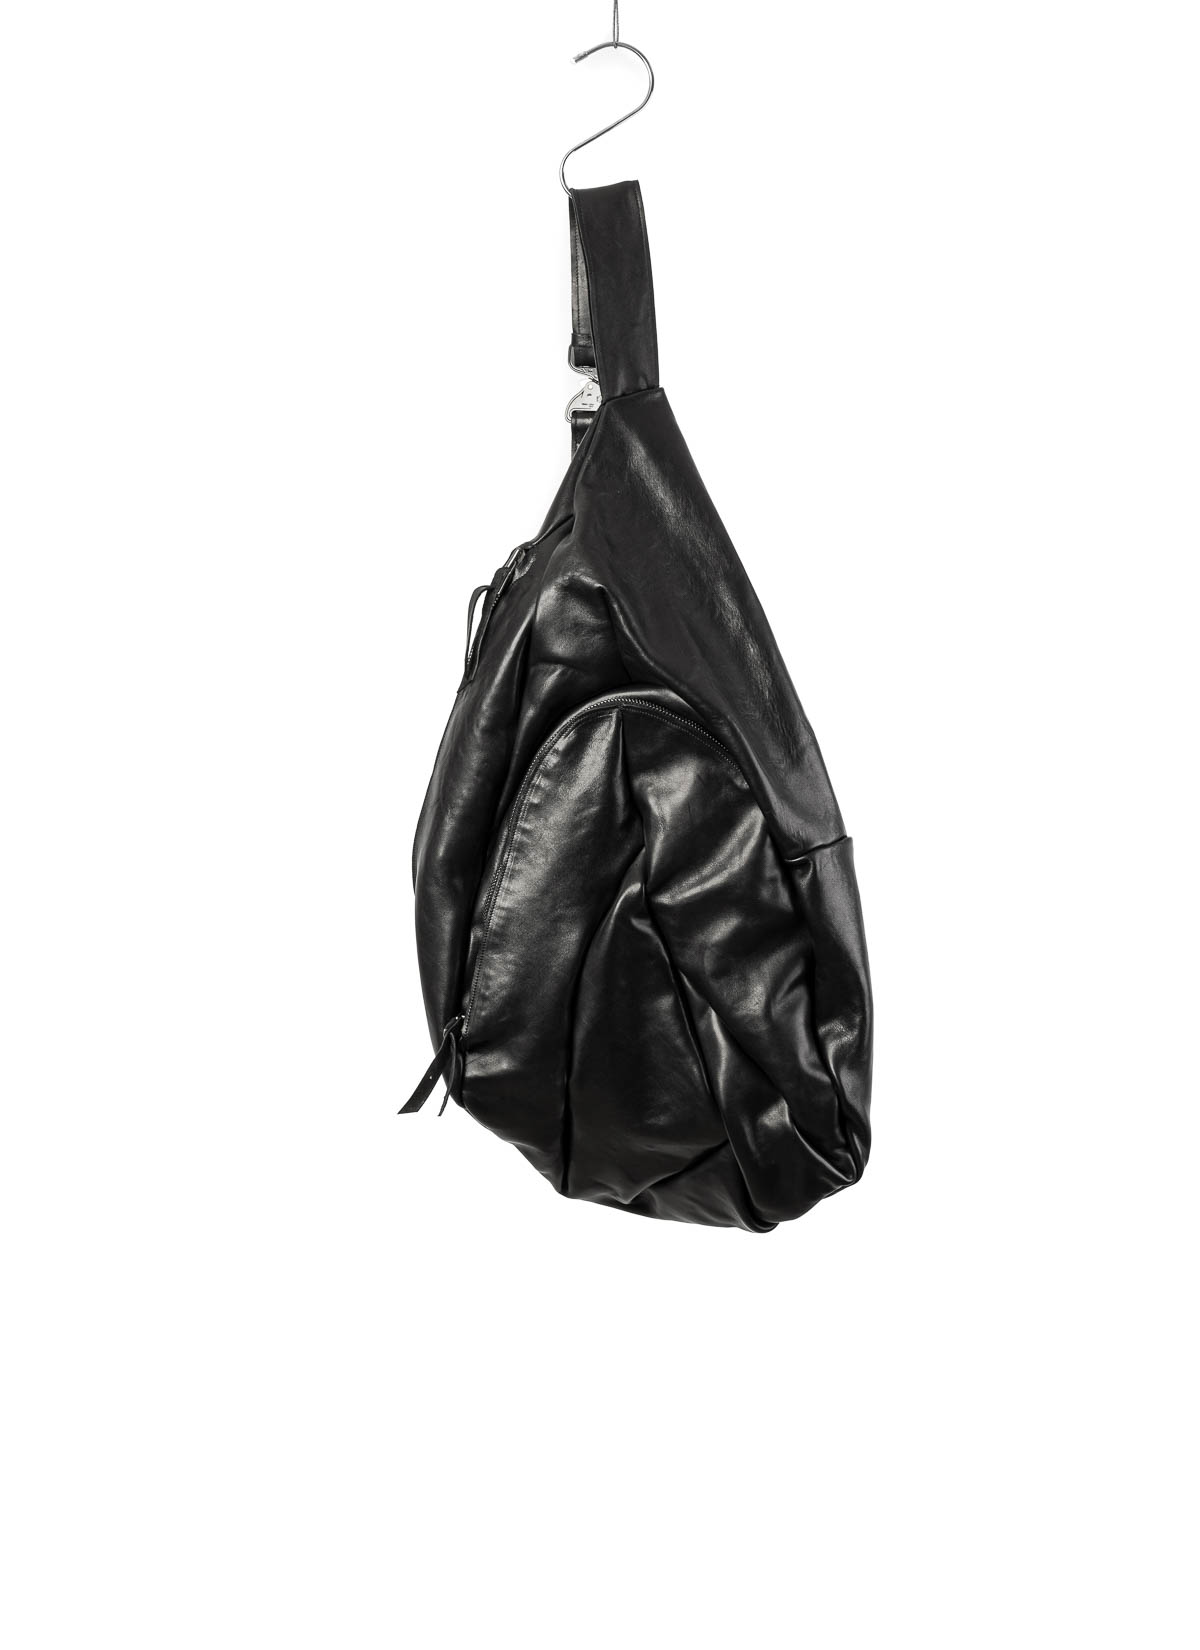 hide-m | LEON EMANUEL Dealer Bag XL, black horse leather